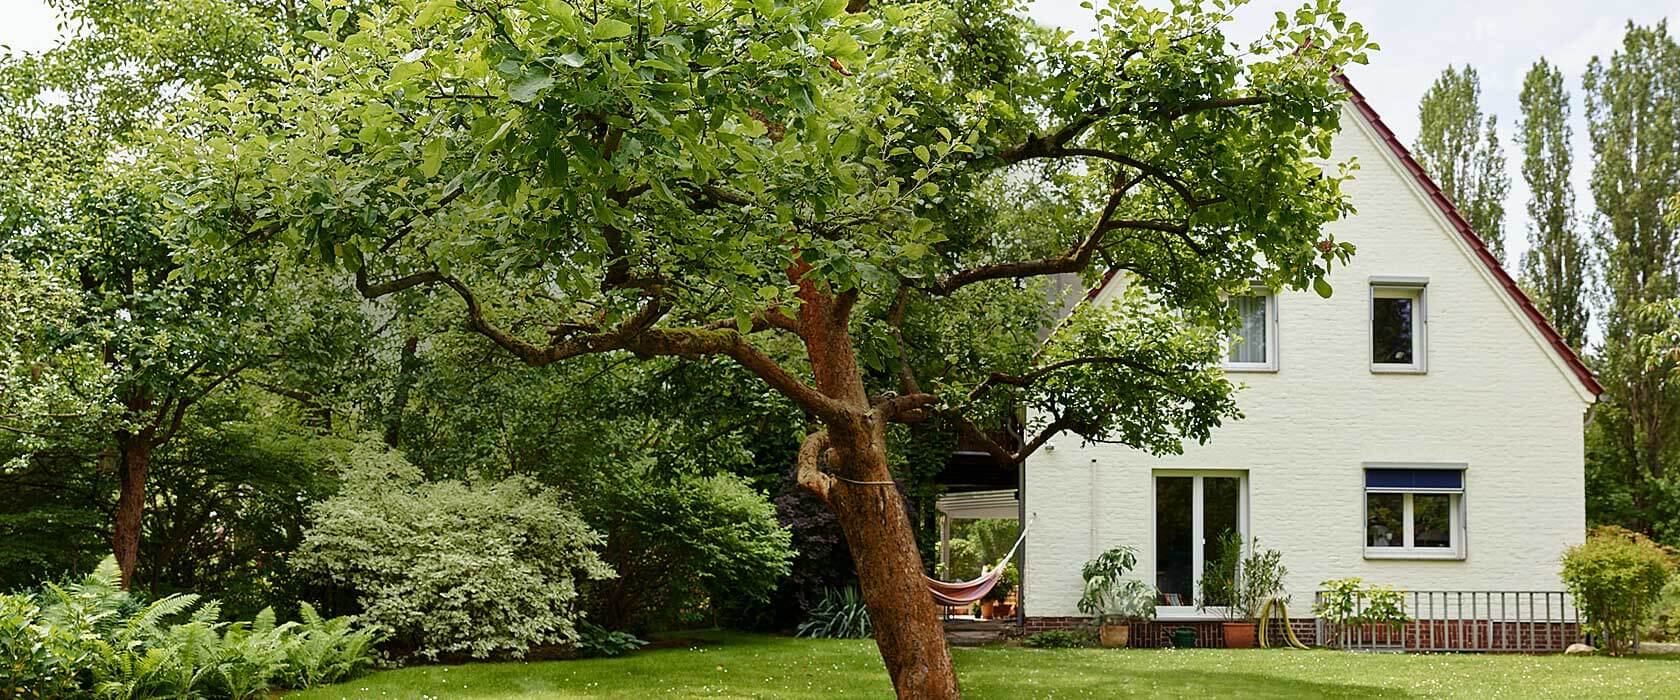 Einfamilienhaus hinter grünem Baum. Die Wohngebäudeversicherung ist notwendig für alle Haus-Eigentümer.